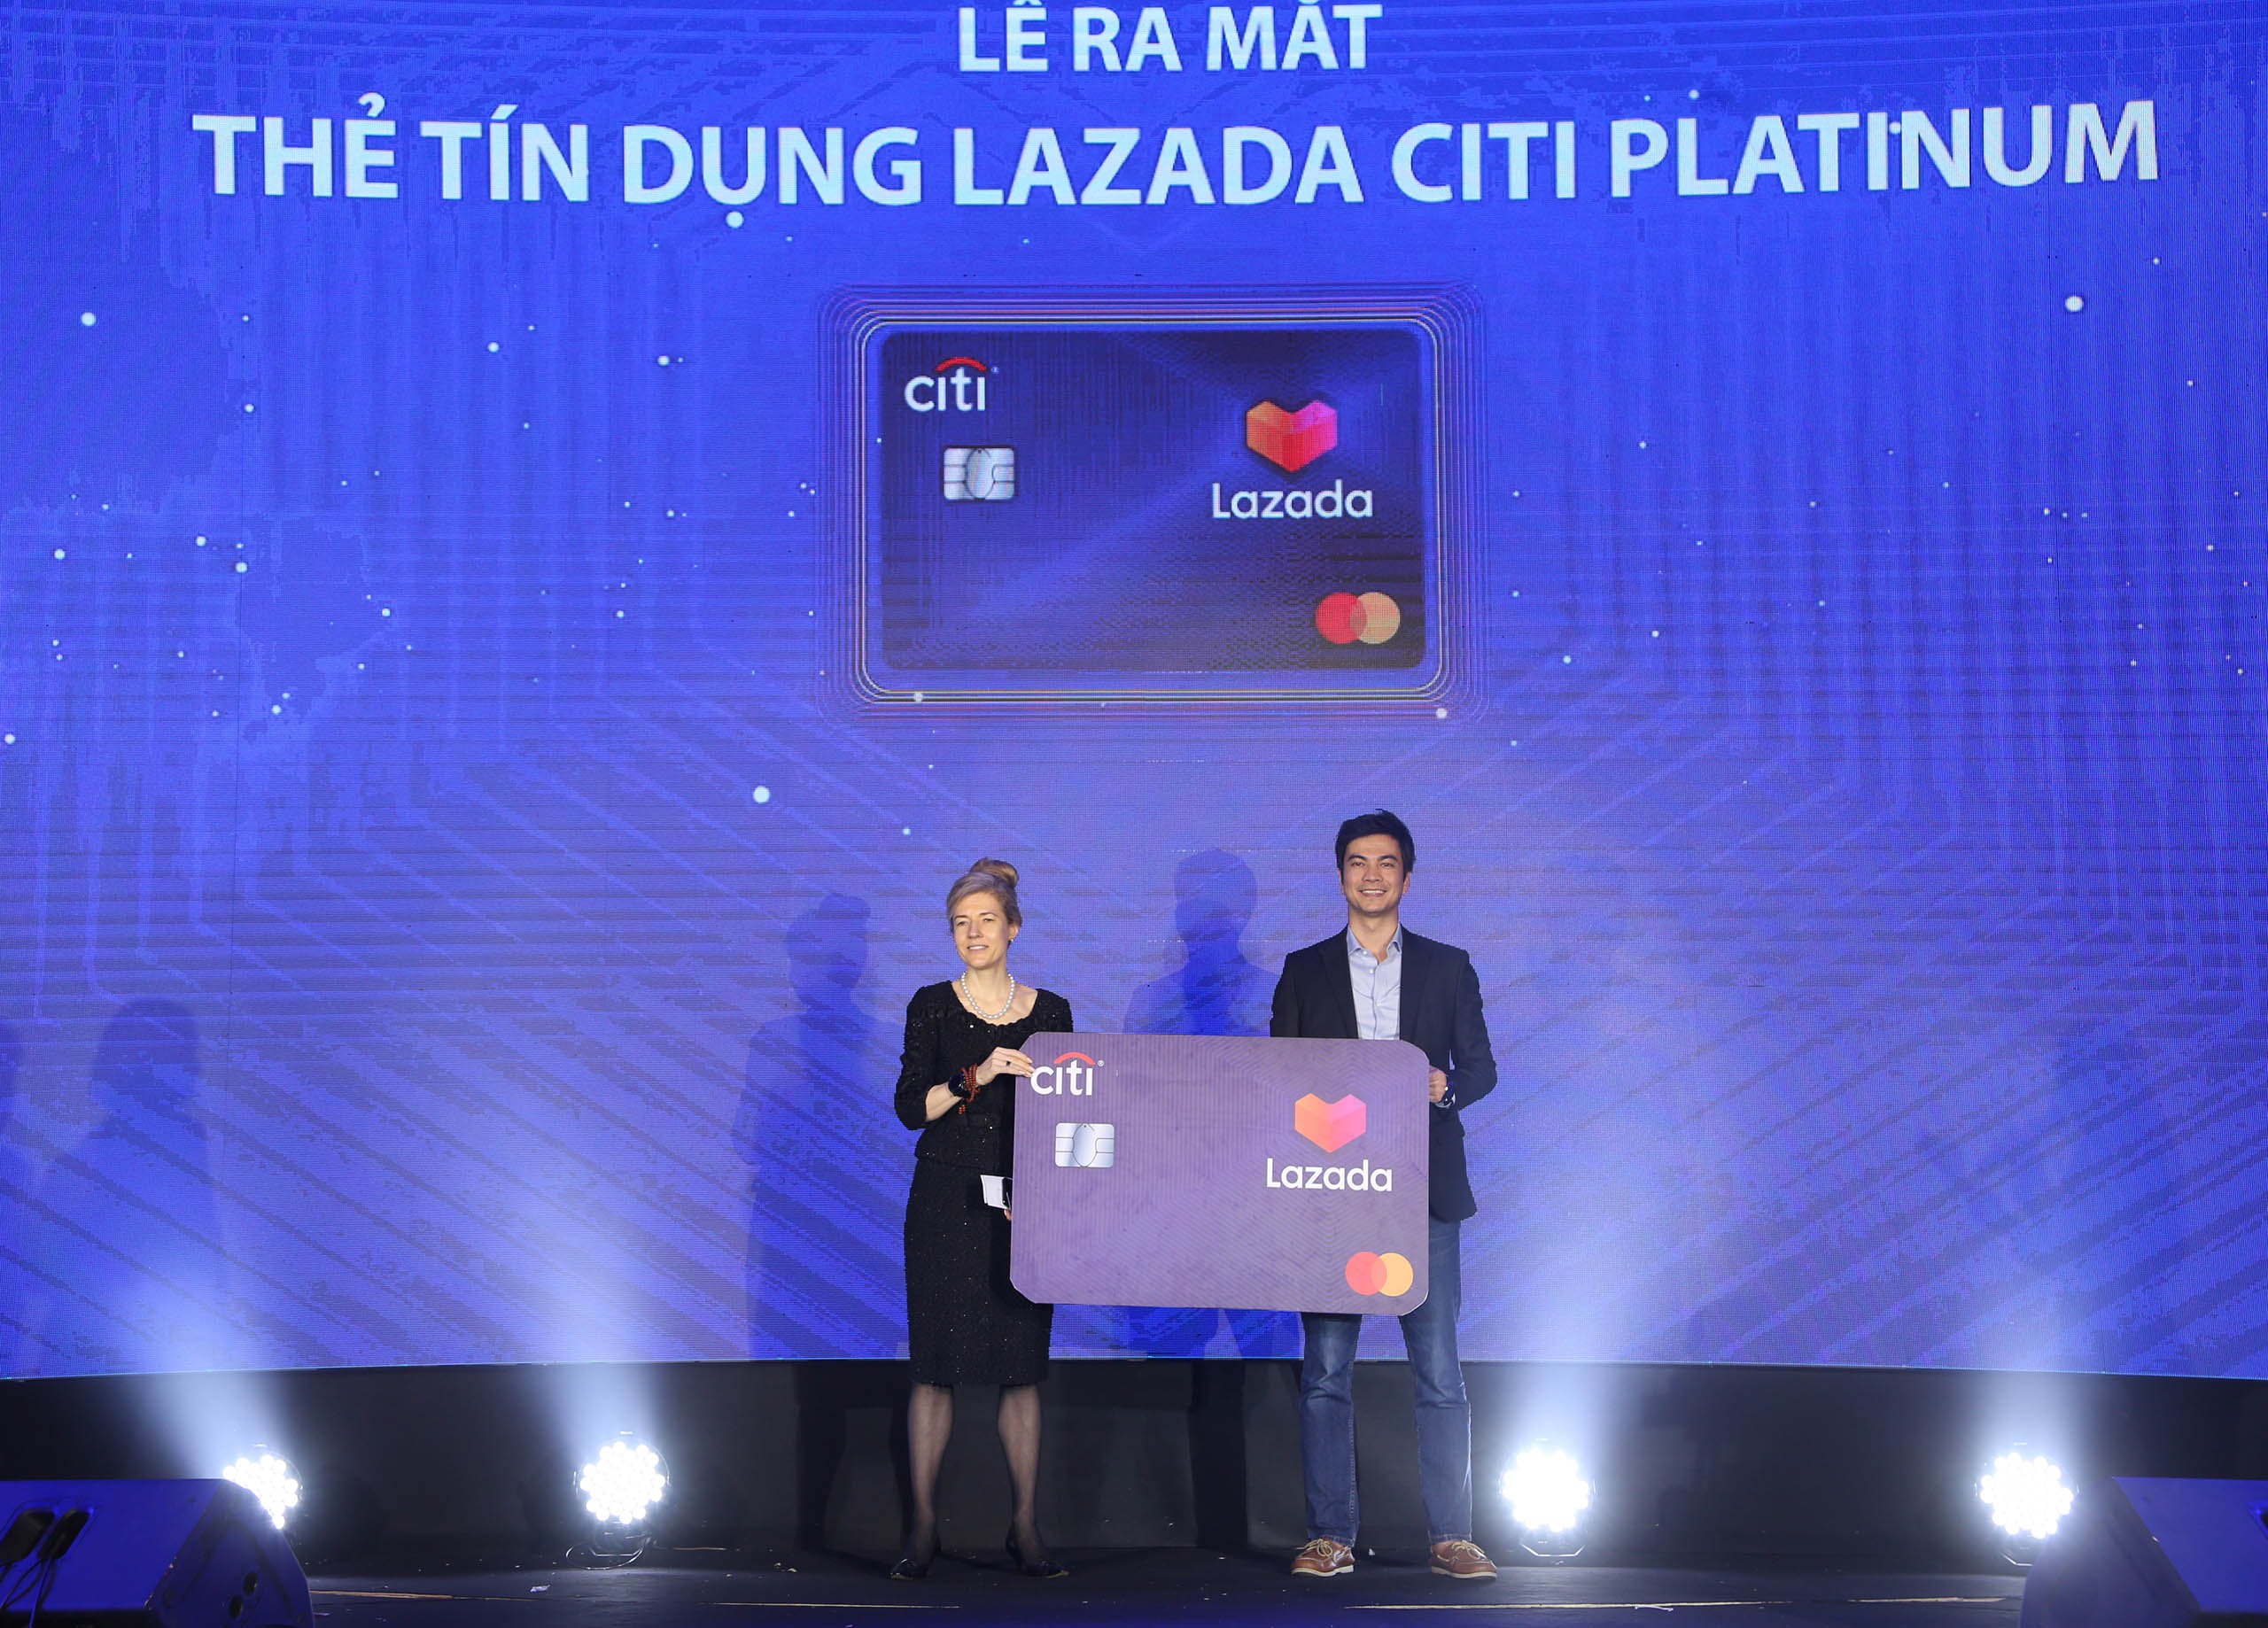 Ra mắt thẻ tín dụng Lazada Citi Platinum tại Việt Nam - 2